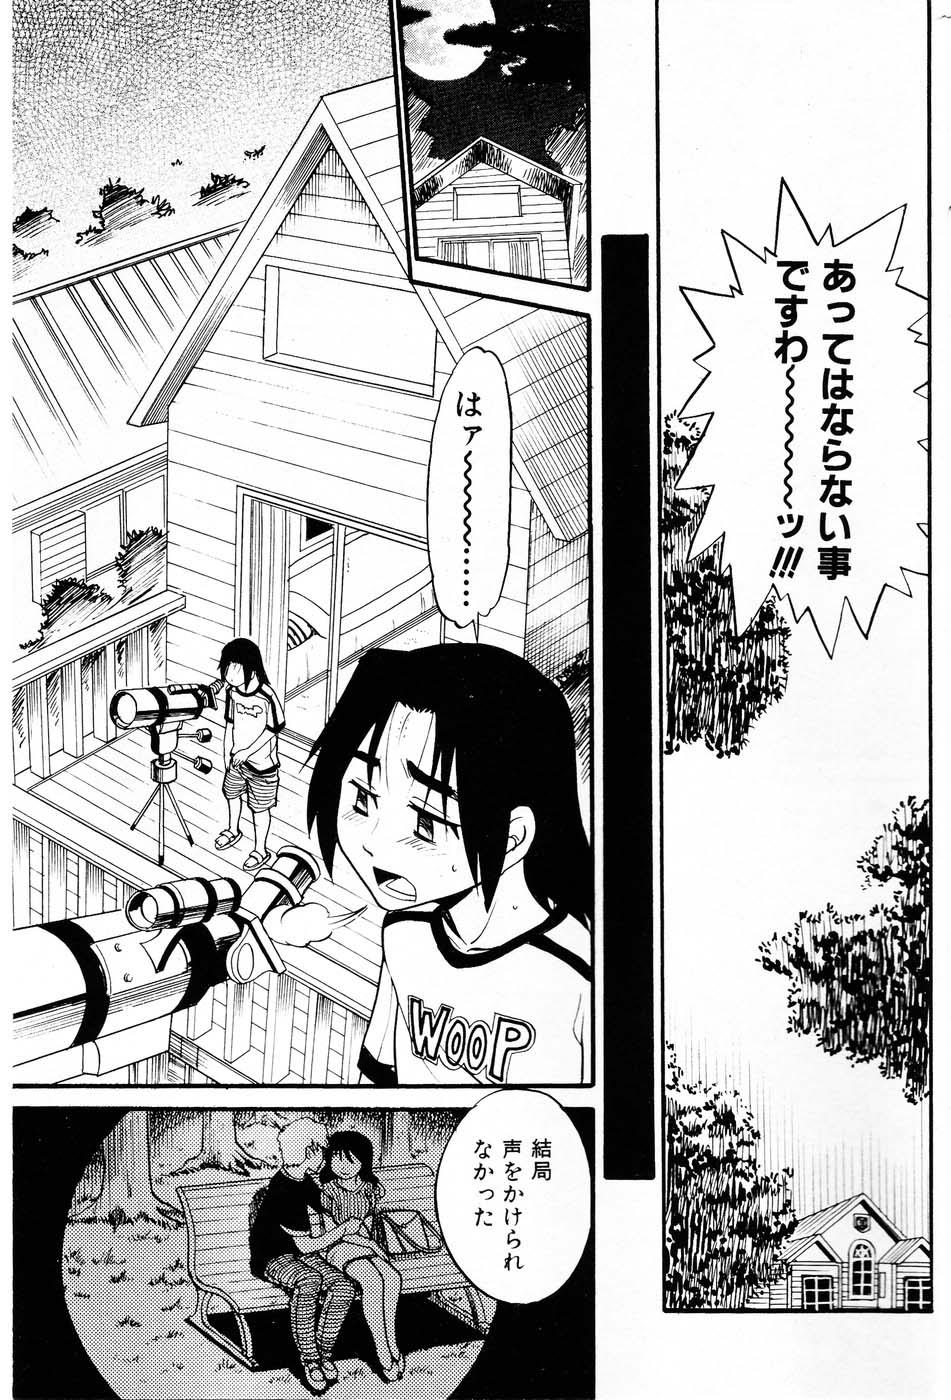 18yo Ochiru Tenshi "Vol.03" - INCOMPLETE Bunduda - Page 9